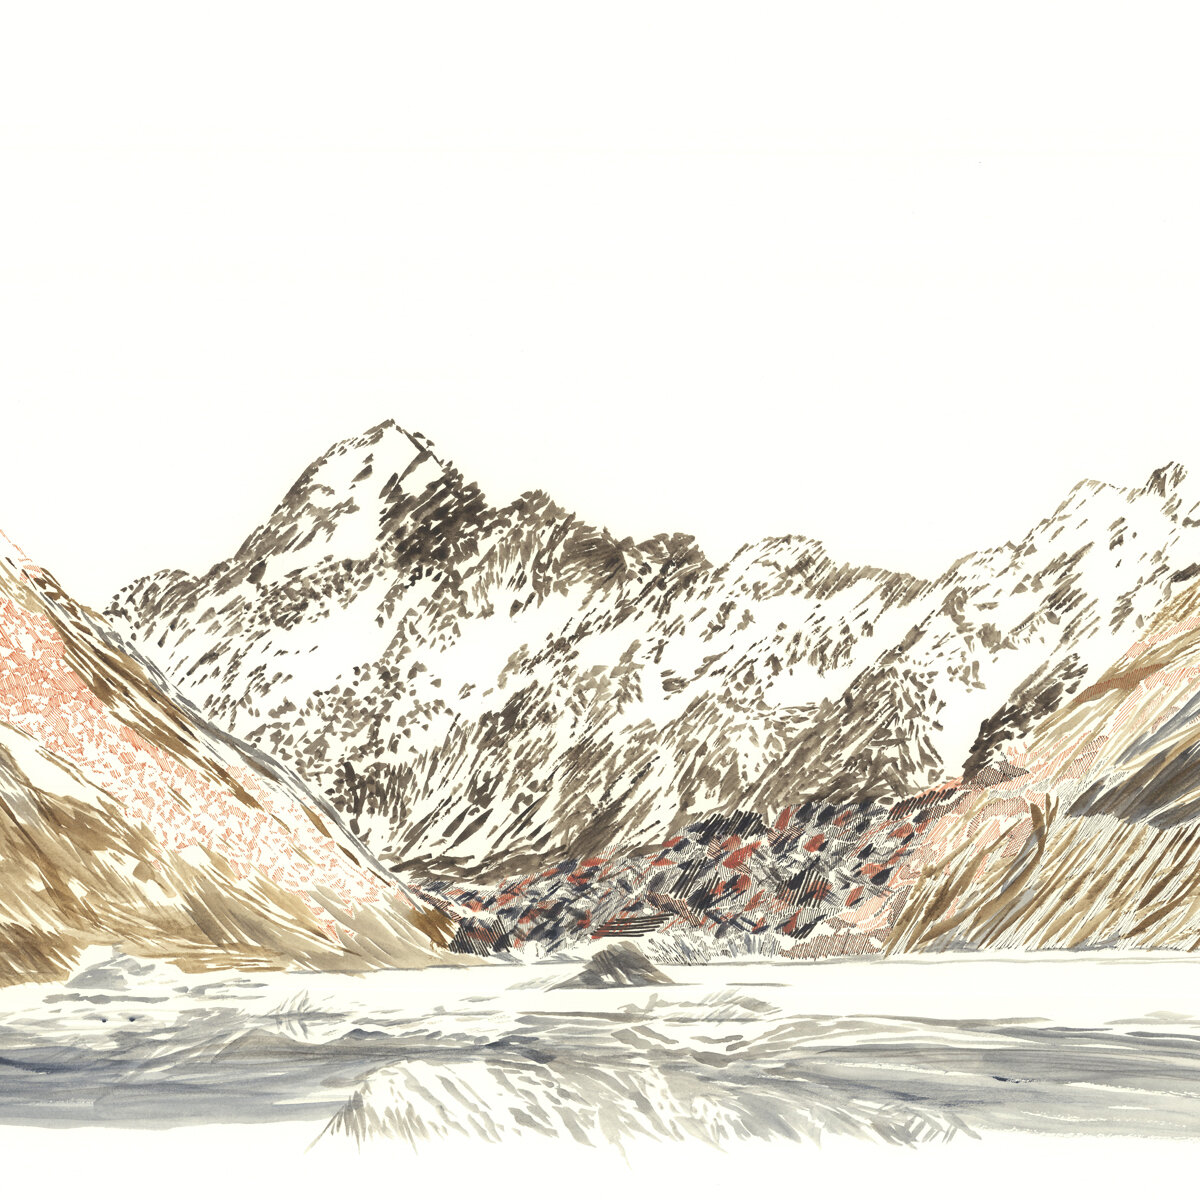 Glacier Sketch by CobaltSunrise on DeviantArt